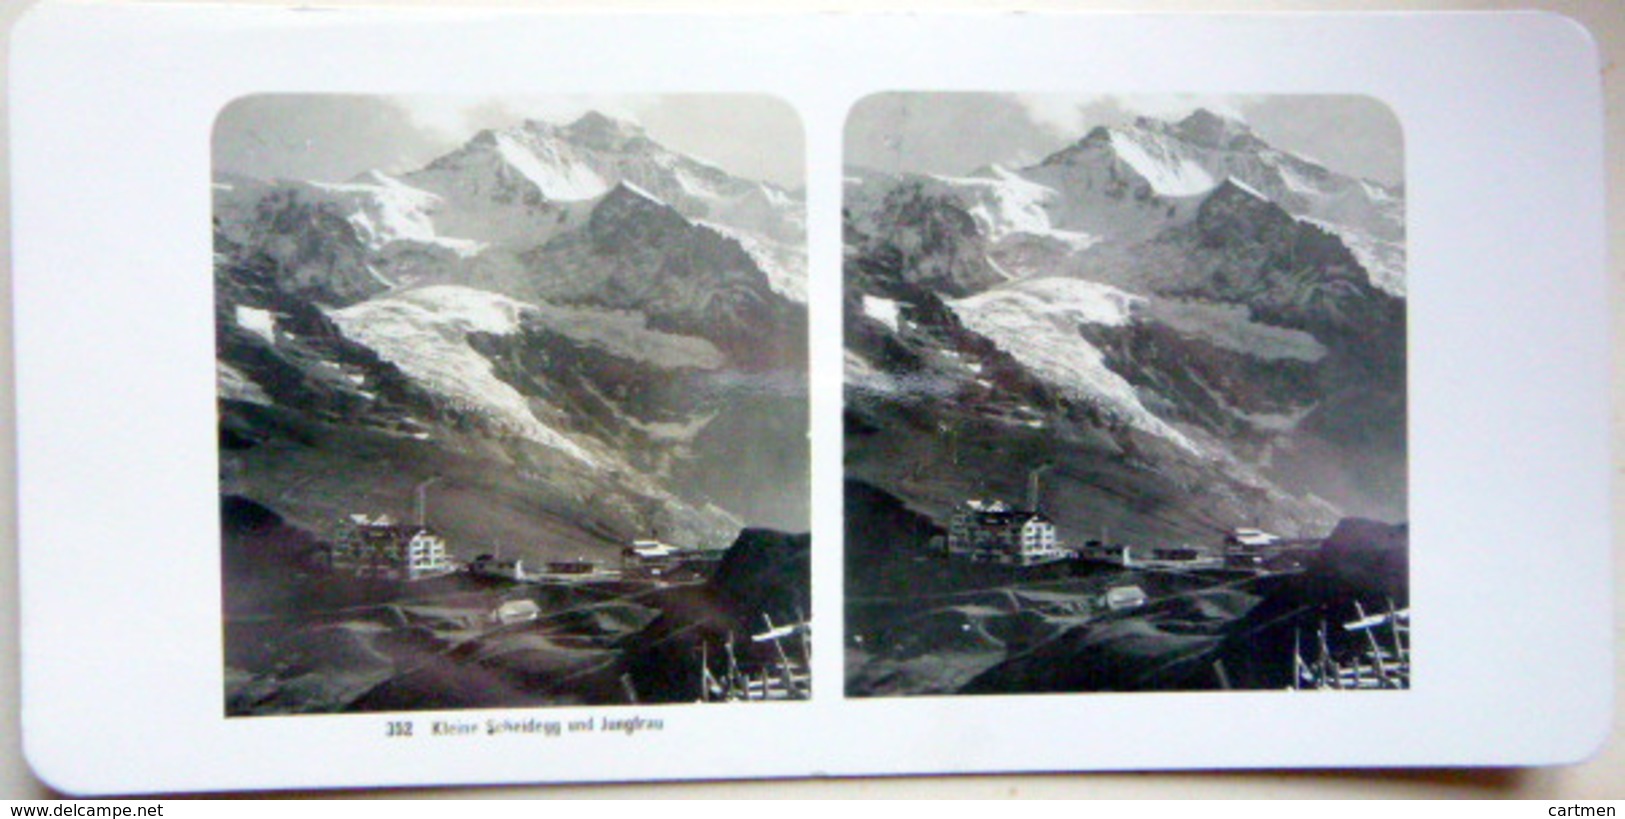 SUISSE SWISS SWITZERLAND KLEINE SCHEIDEGGUND MUNCH AND JUNGFRAU TROIS PHOTOS STEREOS 1900  ALPINISME  MONTAGNE  GLACIERS - Stereo-Photographie